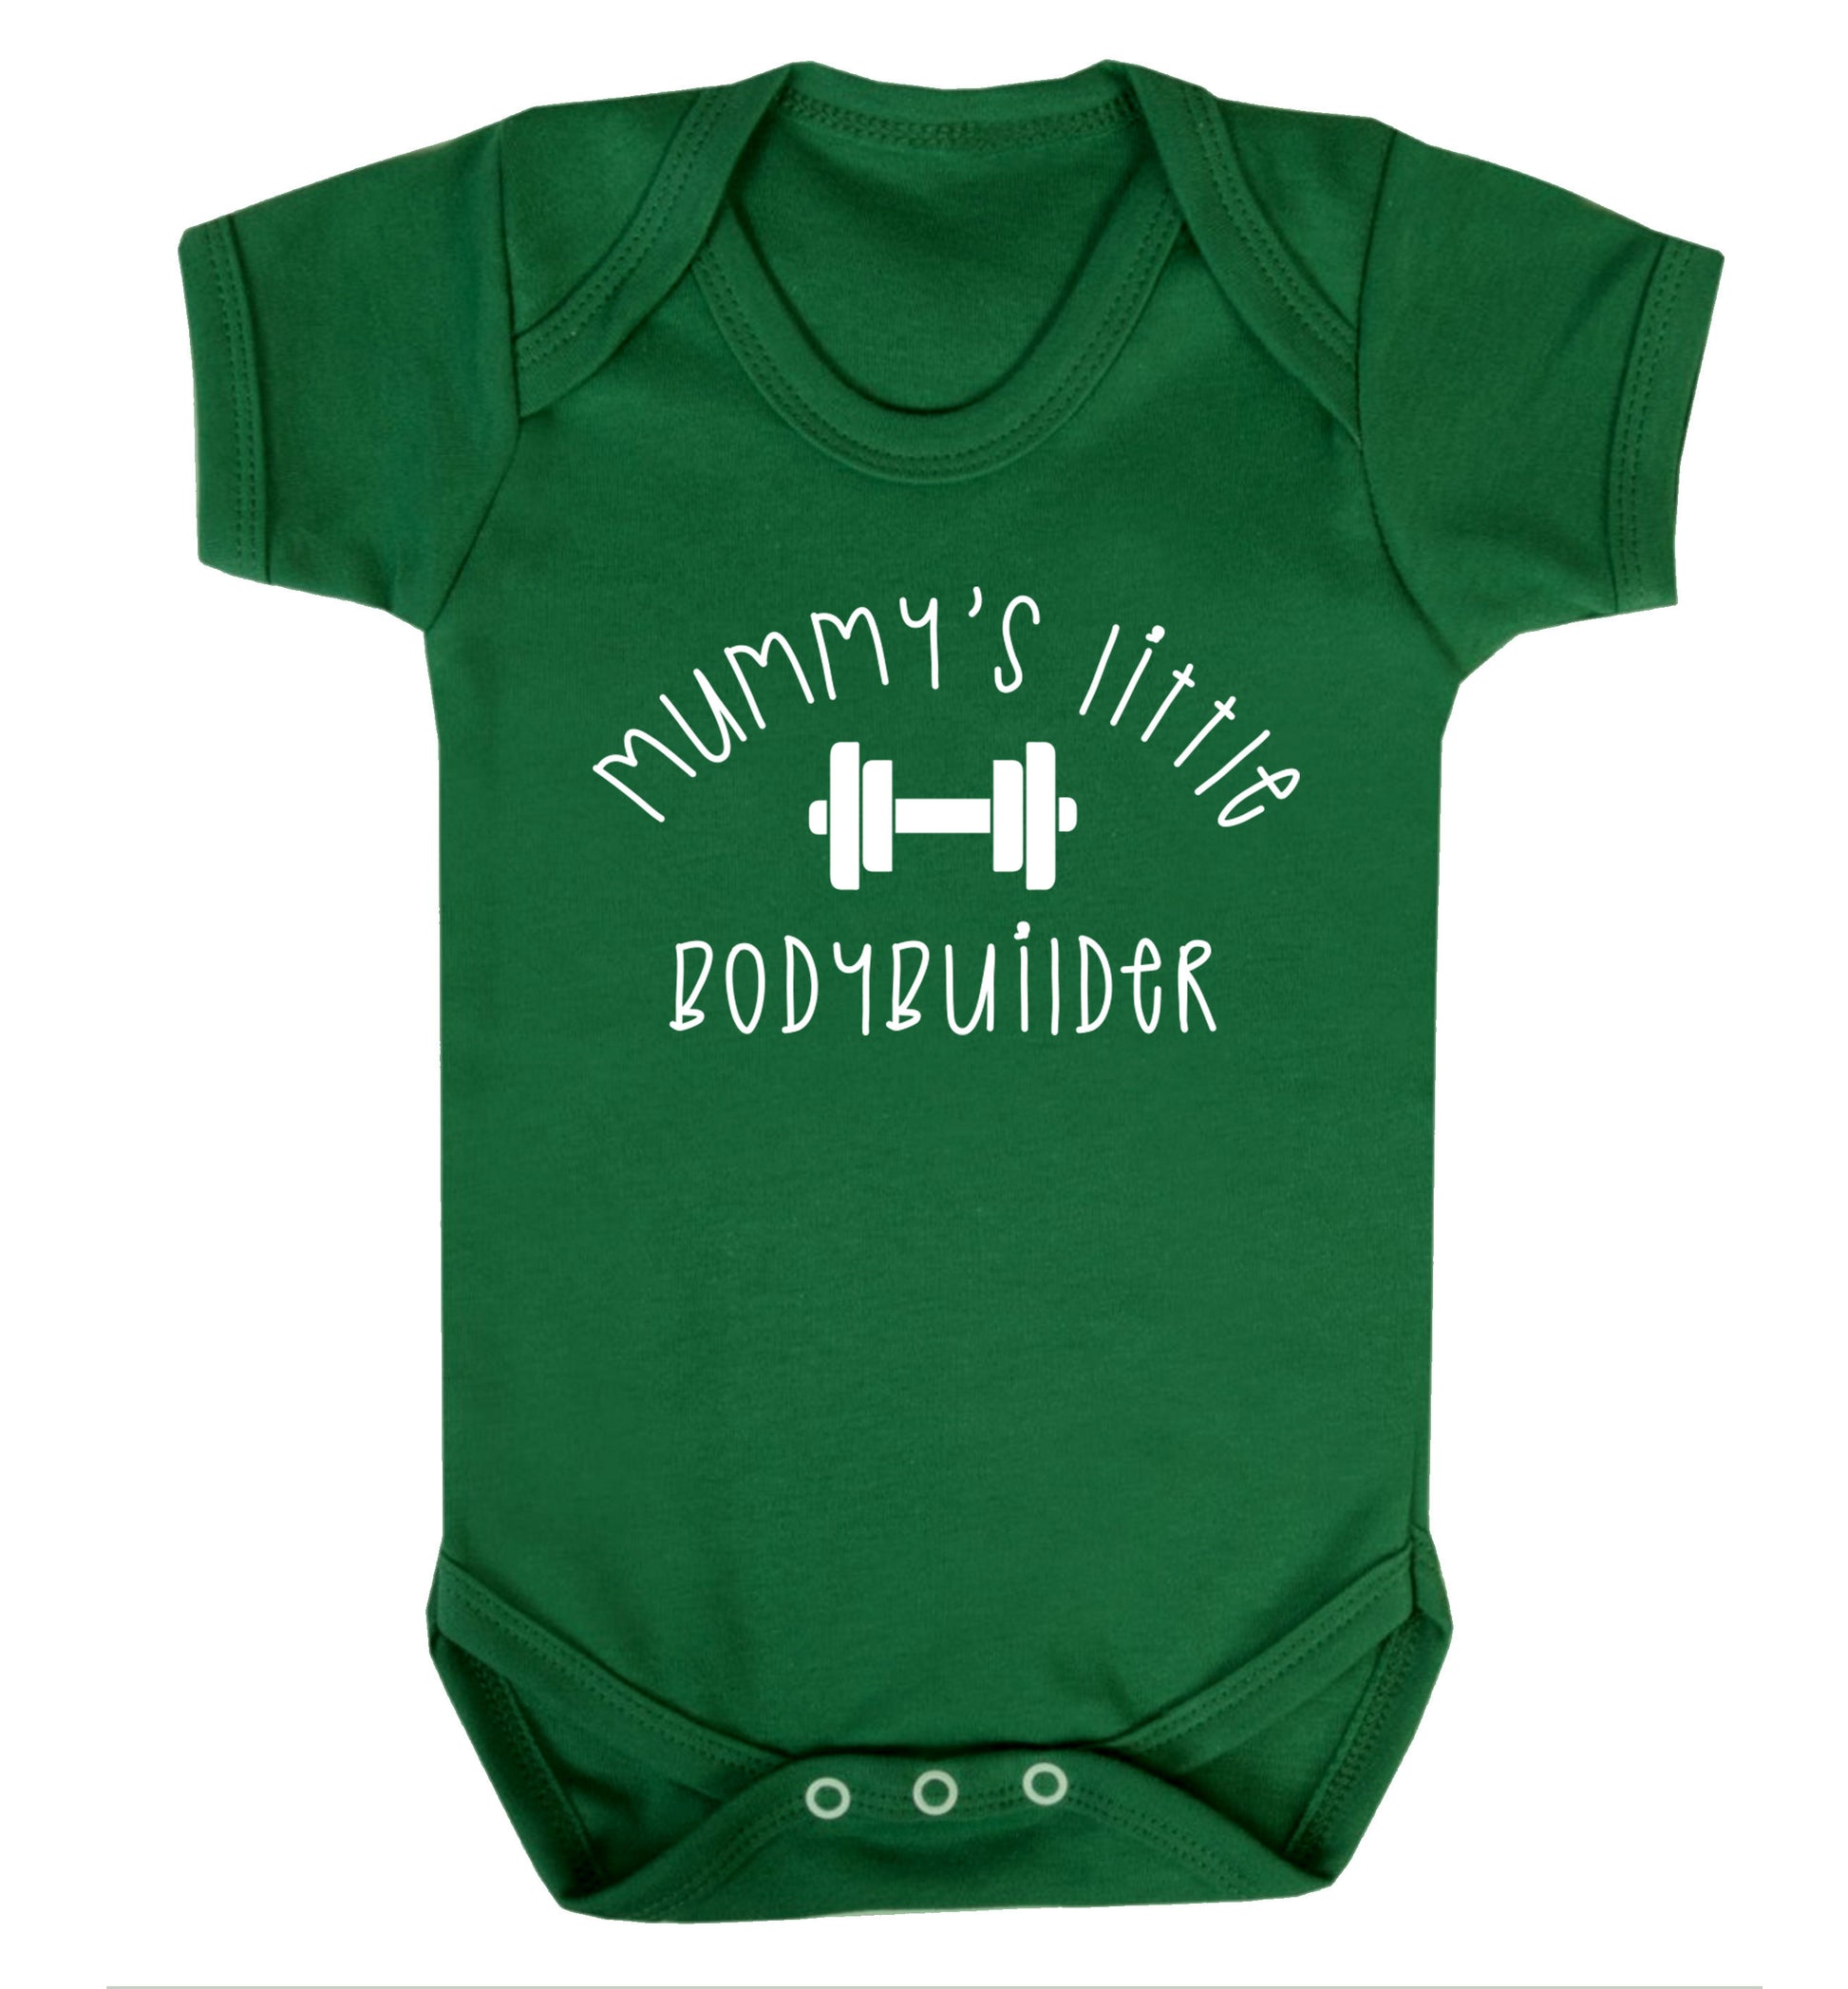 Mummy's little bodybuilder Baby Vest green 18-24 months